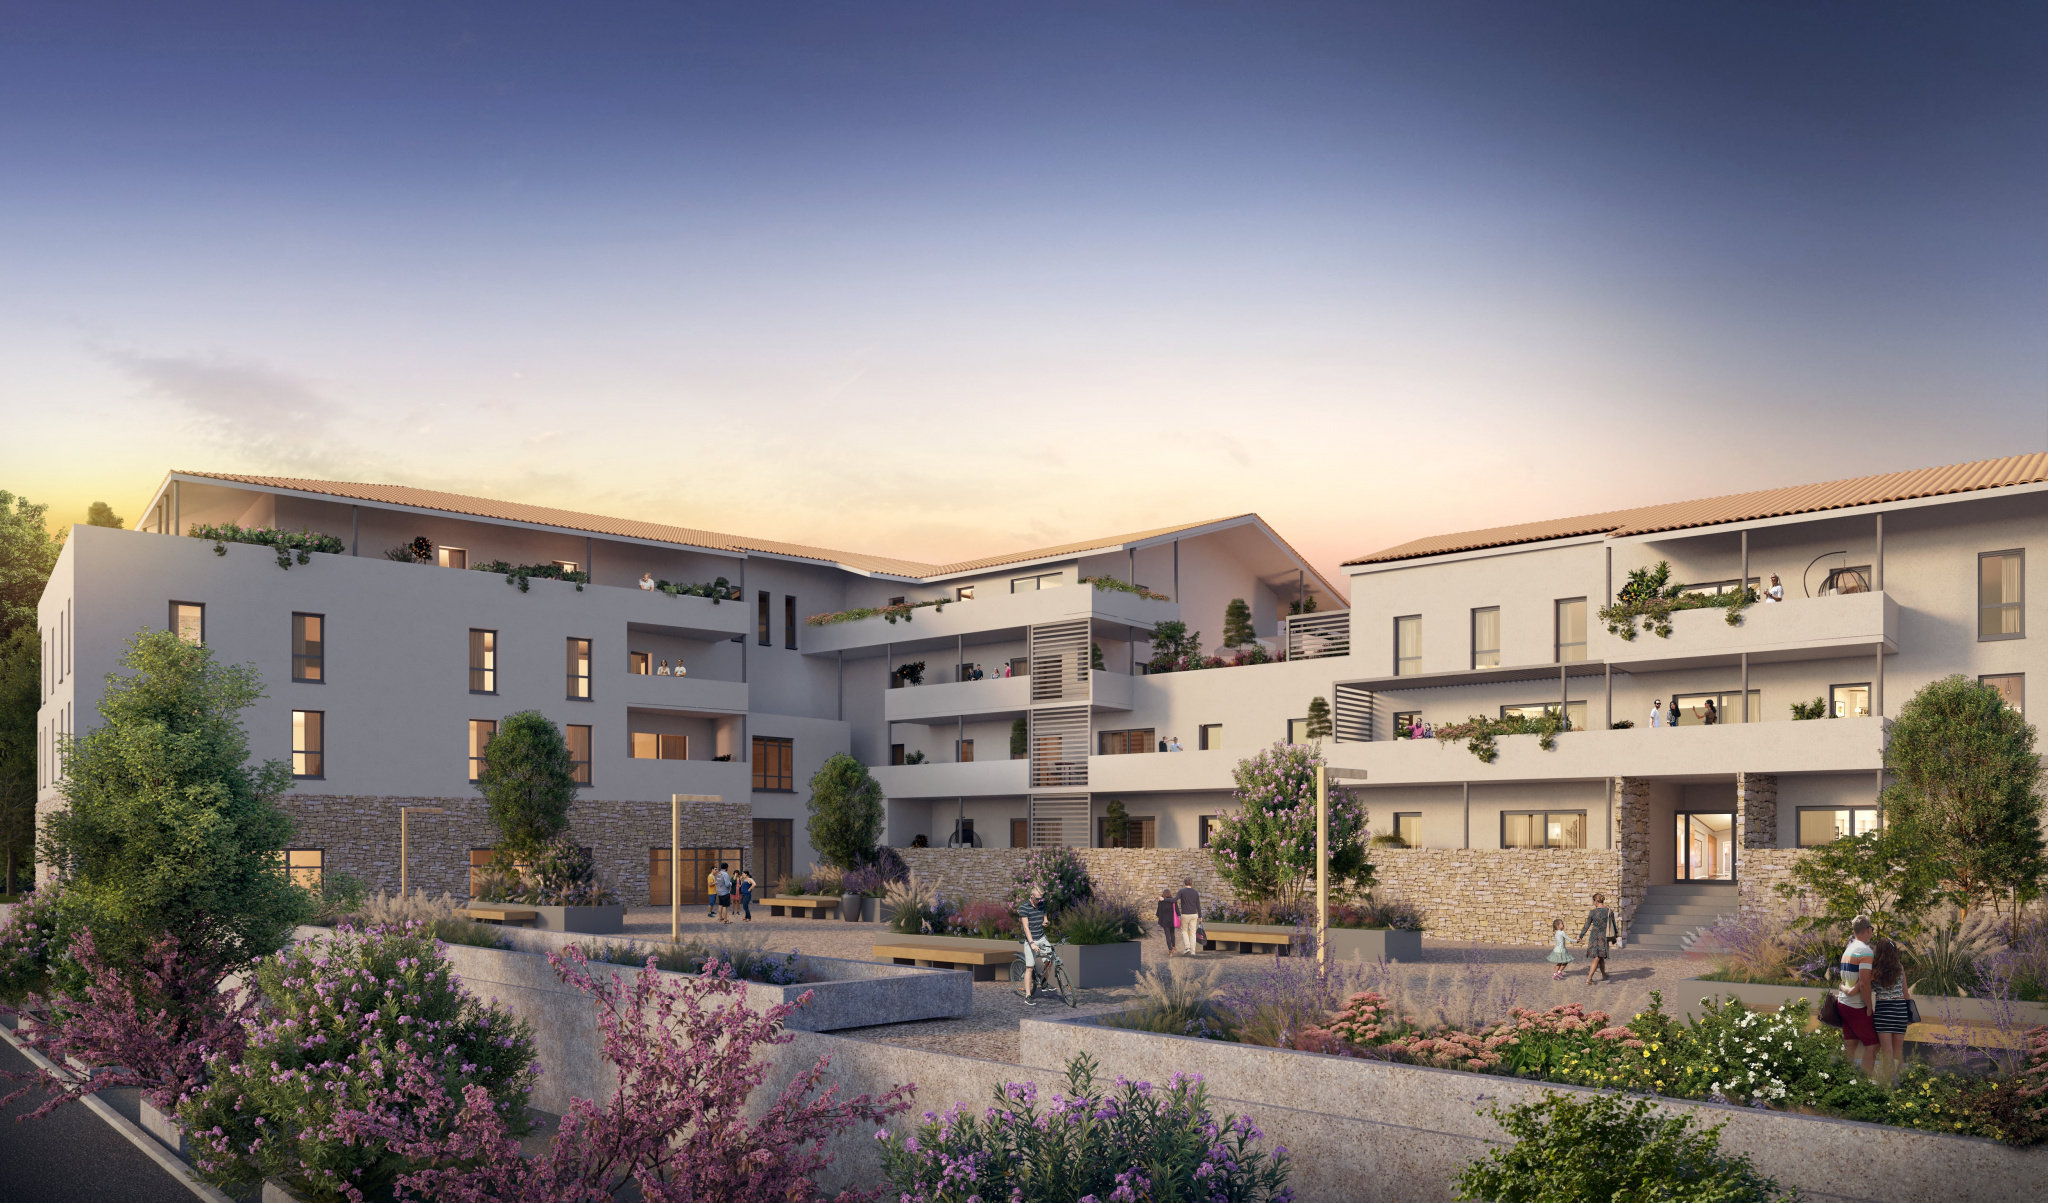 Nouveau programme immobilier neuf à Saint-andré de sangonis, proche Montpellier (1 à 4 pièces, 33 à 104 m²) Saint-André-de-Sangonis